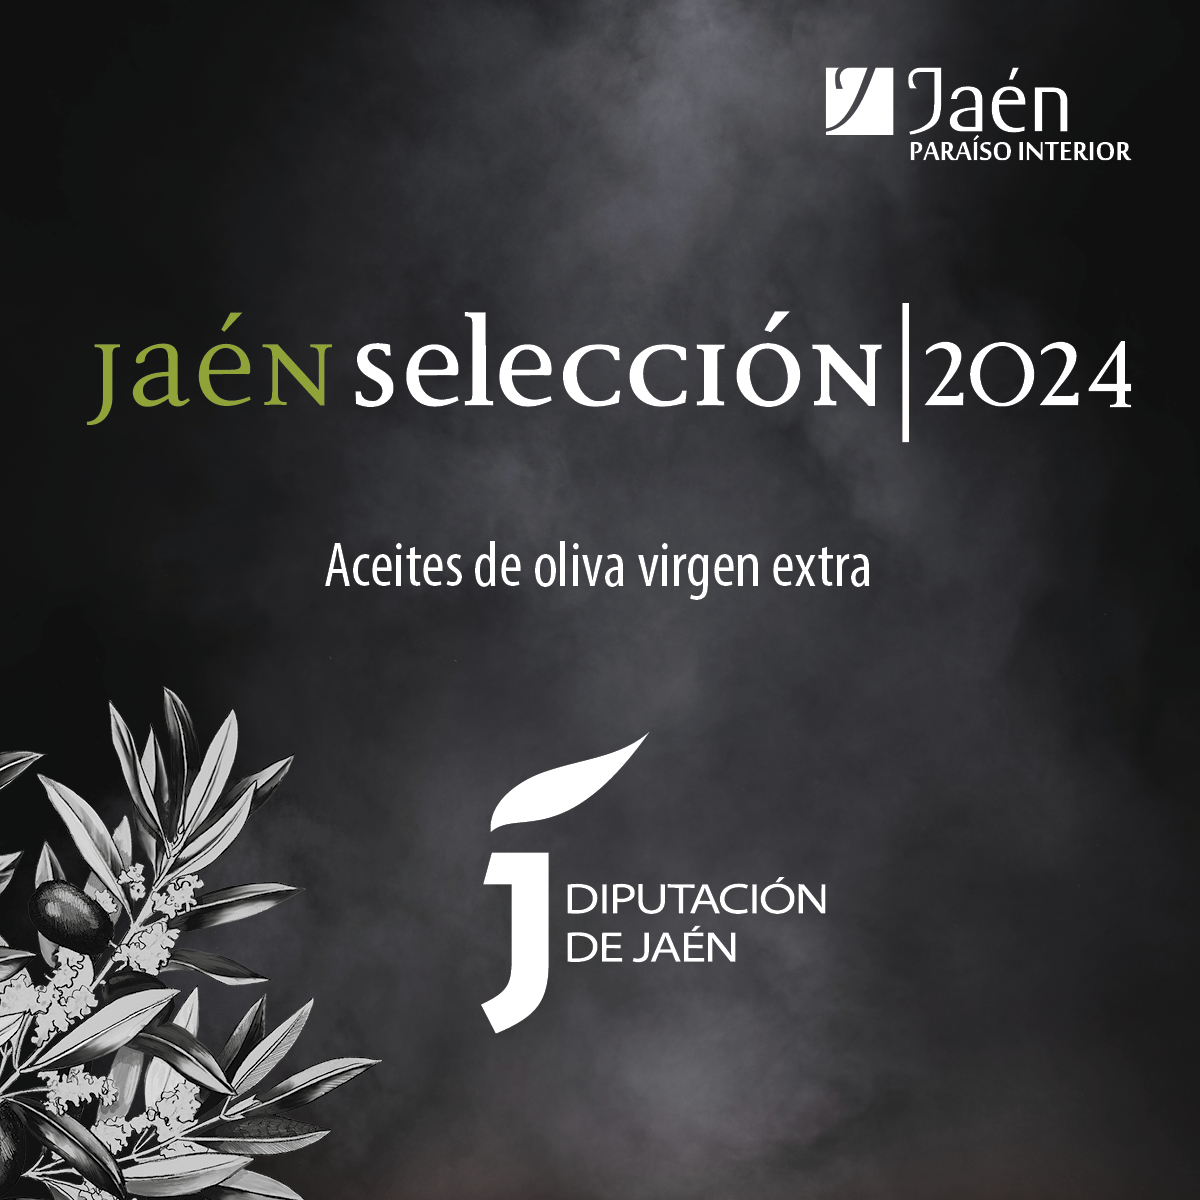 Imagen promocional de los aceites 'Jaén Selección 2024'. JPG de 512 KB | Ampliar en ventana nueva | Diputación de Jaén